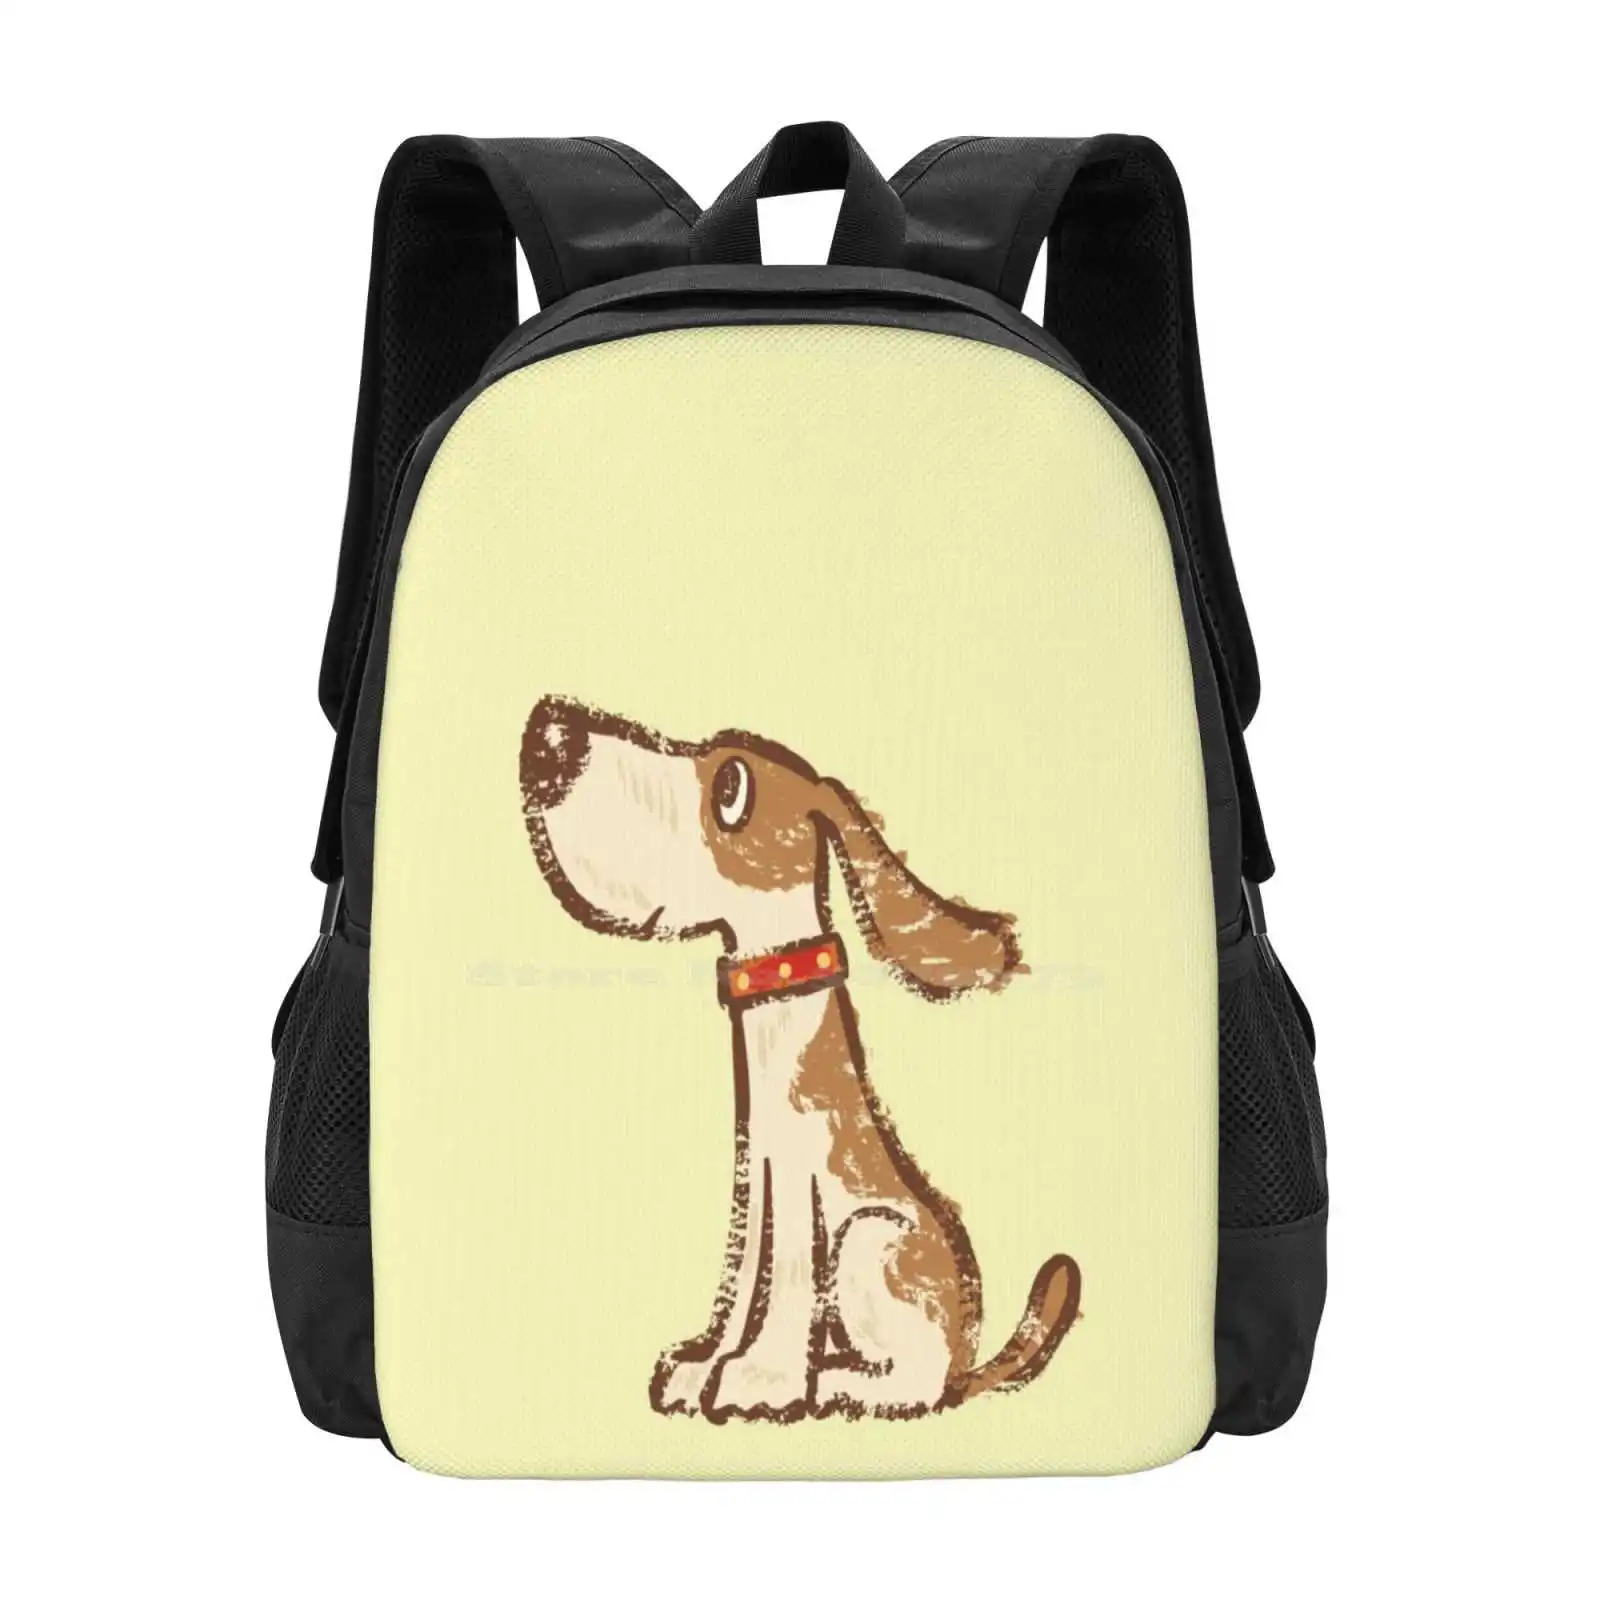 Рюкзак для подростков, студентов колледжа, с рисунком собаки, сумки с рисунком щенка, Собачий персонаж, Дети Любят собак из мультфильмов, домашние животные